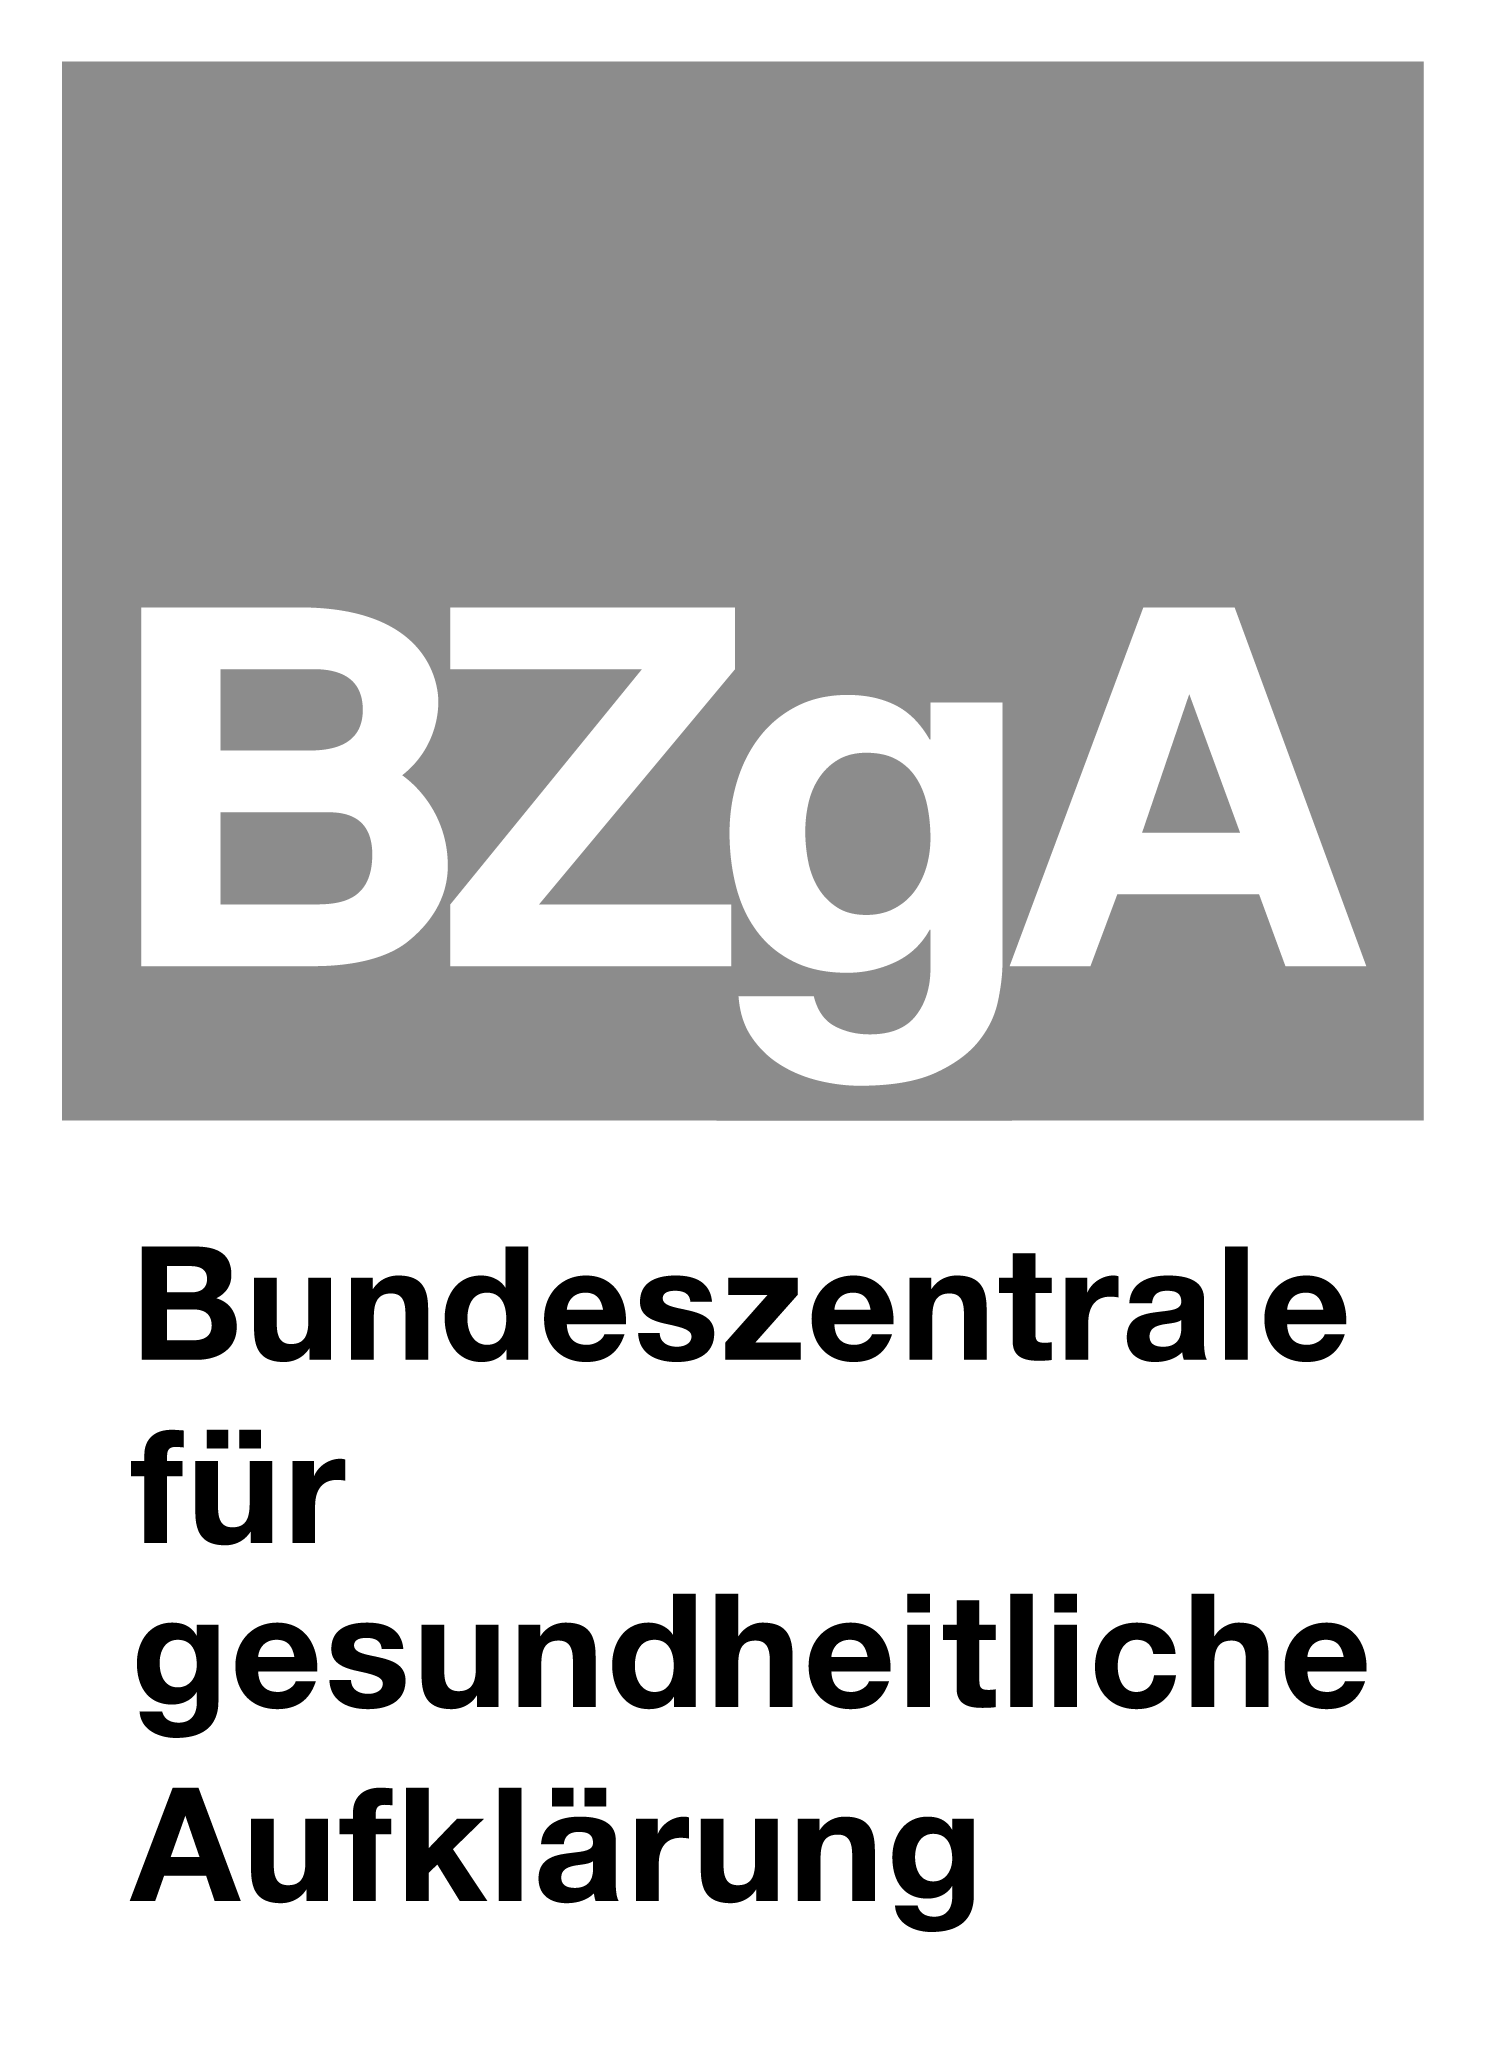 Logo: Bundeszentrale für gesundheitliche Aufklärung (BZgA)